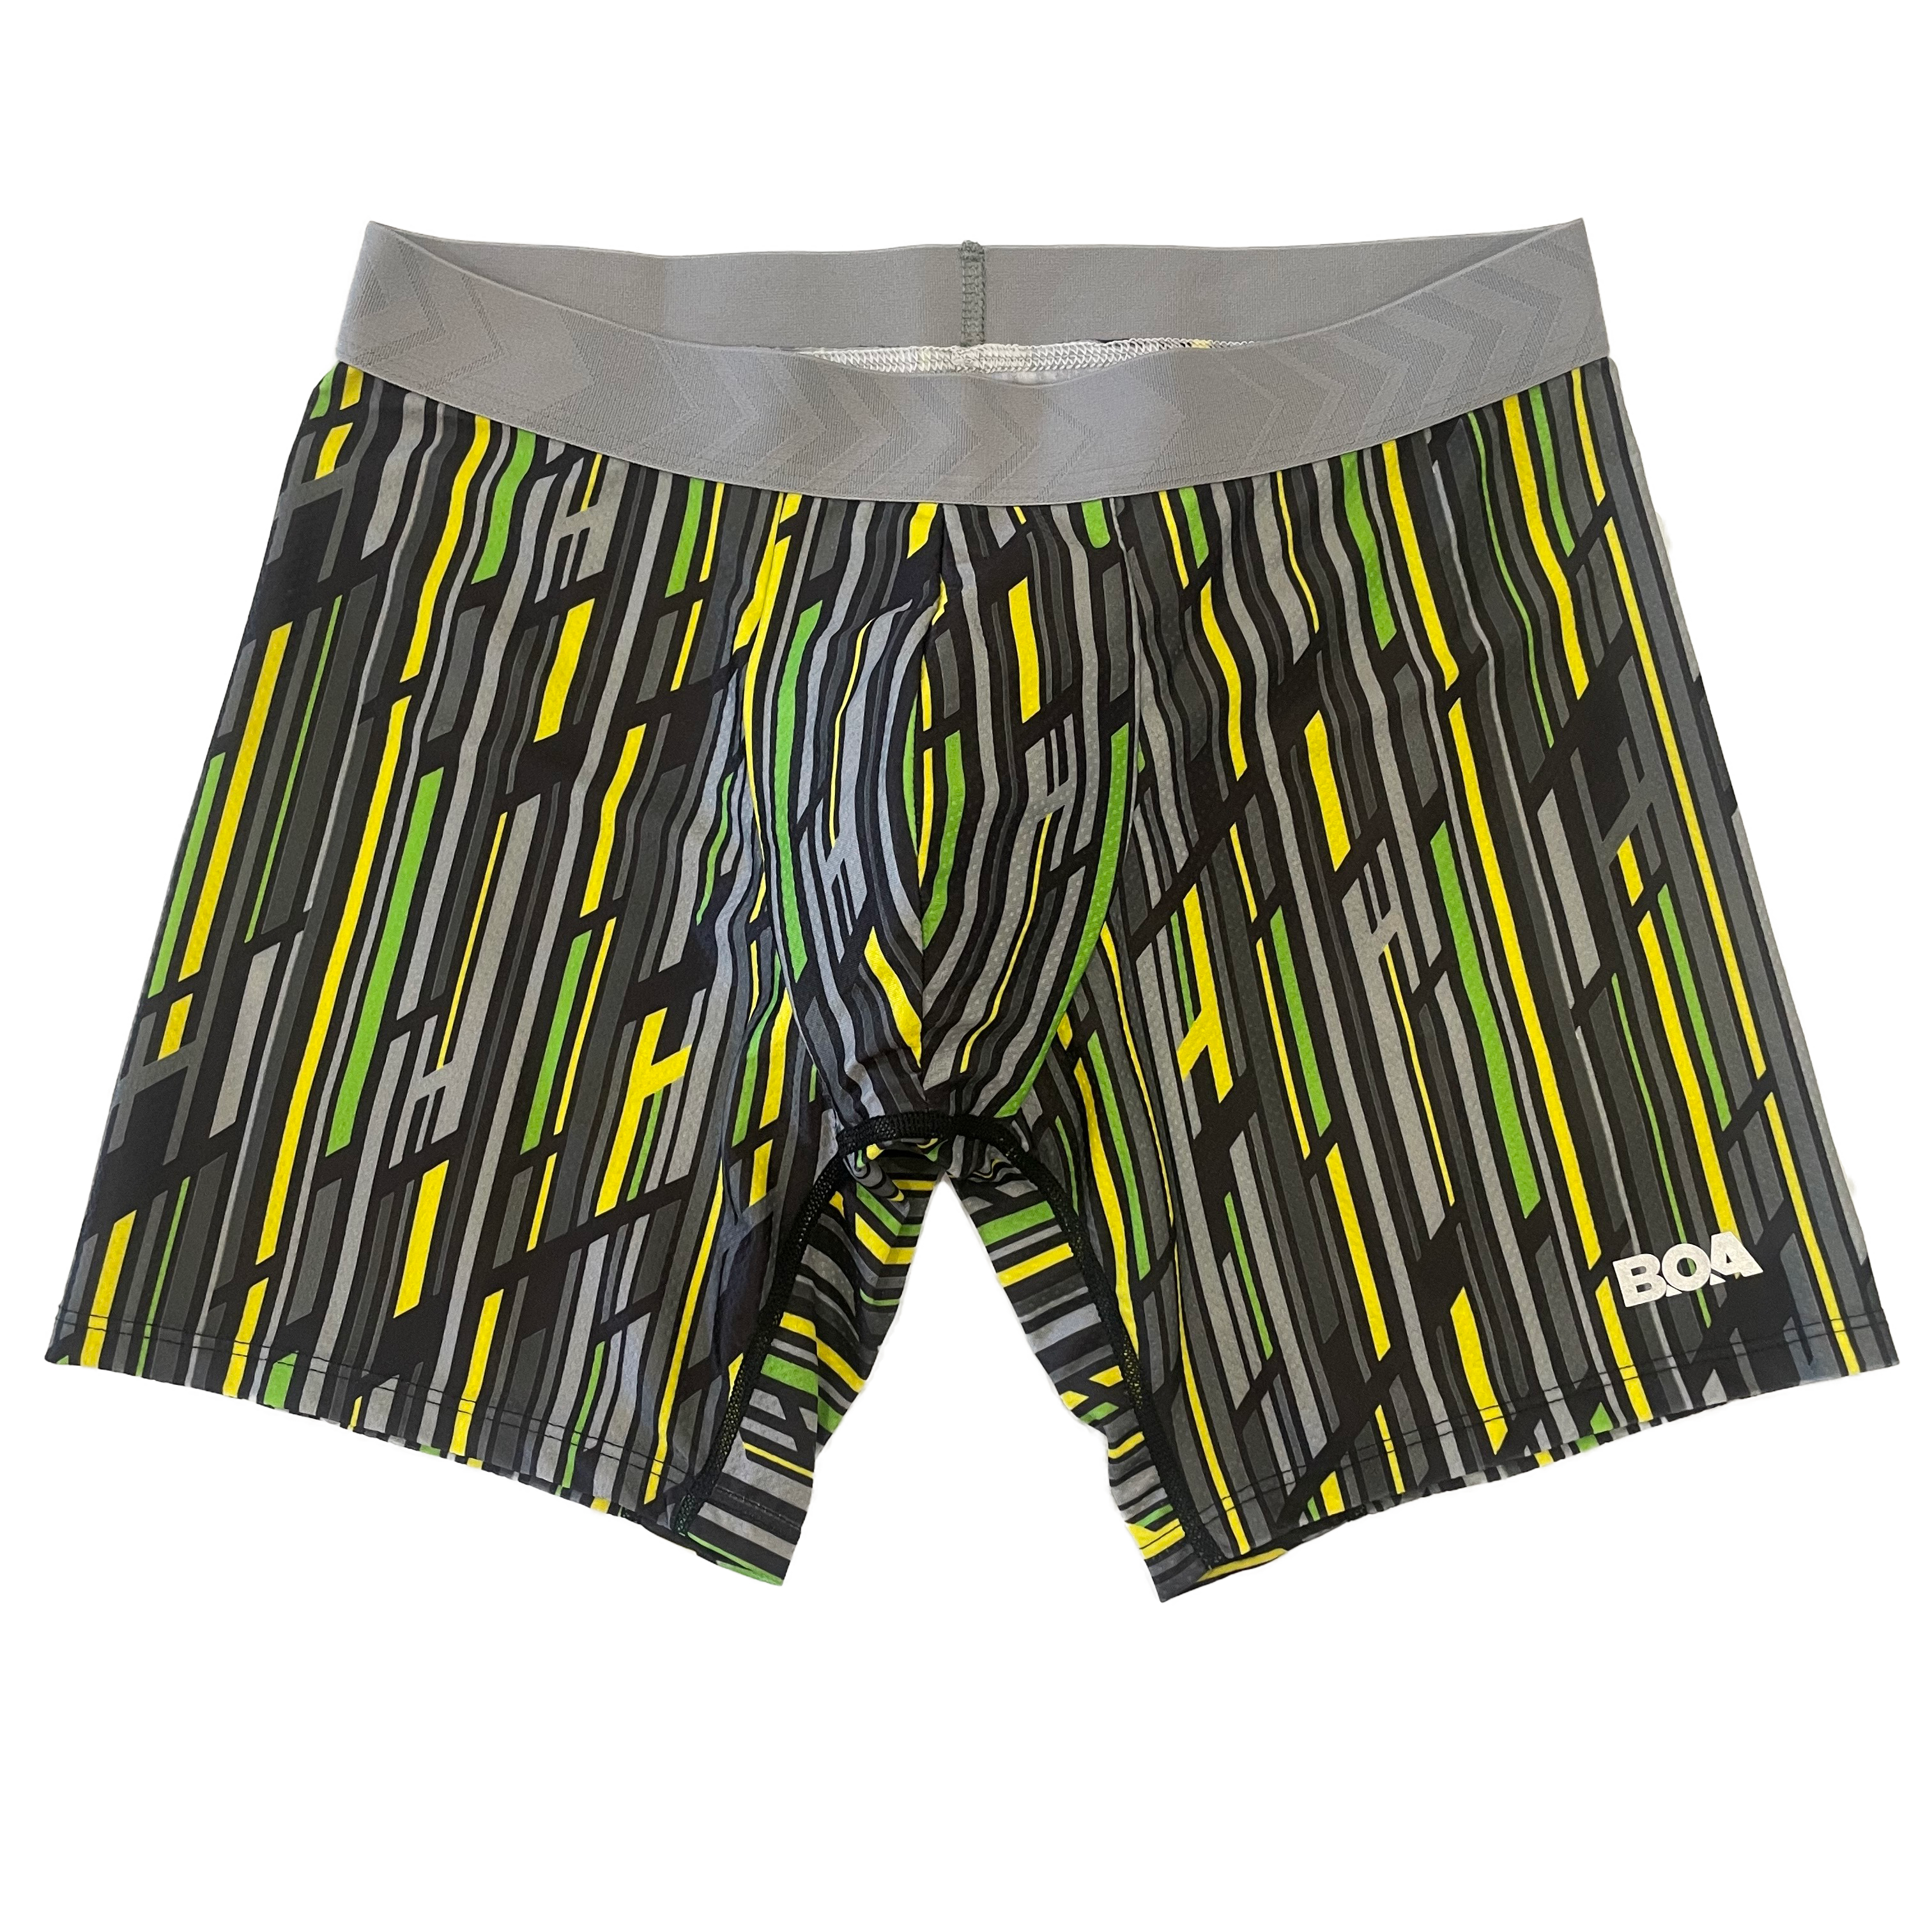 Undies Underwear Clipart Transparent PNG Hd, Doodle Underwear